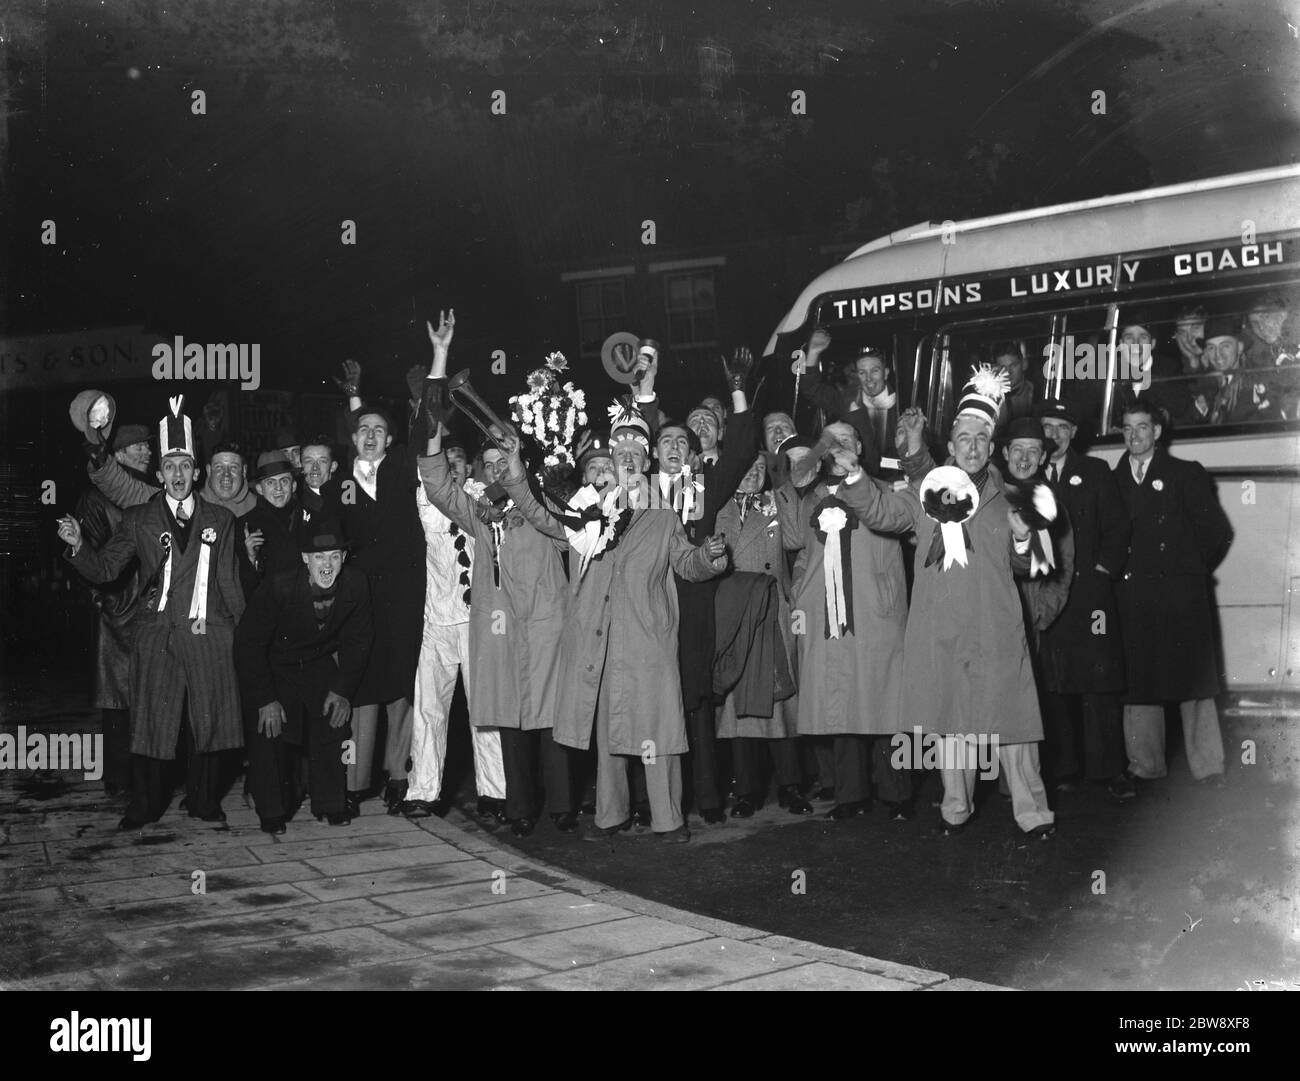 Dartford Anhänger - FA Cup - Dartfords Anhänger verlassen um Mitternacht, um nach Shildon zu reisen für ihre FA Cup-Krawatte - 12/12/36 Charabanc Party Klettern an Bord ihrer Timpson Luxusbus zu gehen und zu unterstützen Dartford Fußballverein . 1936 Stockfoto